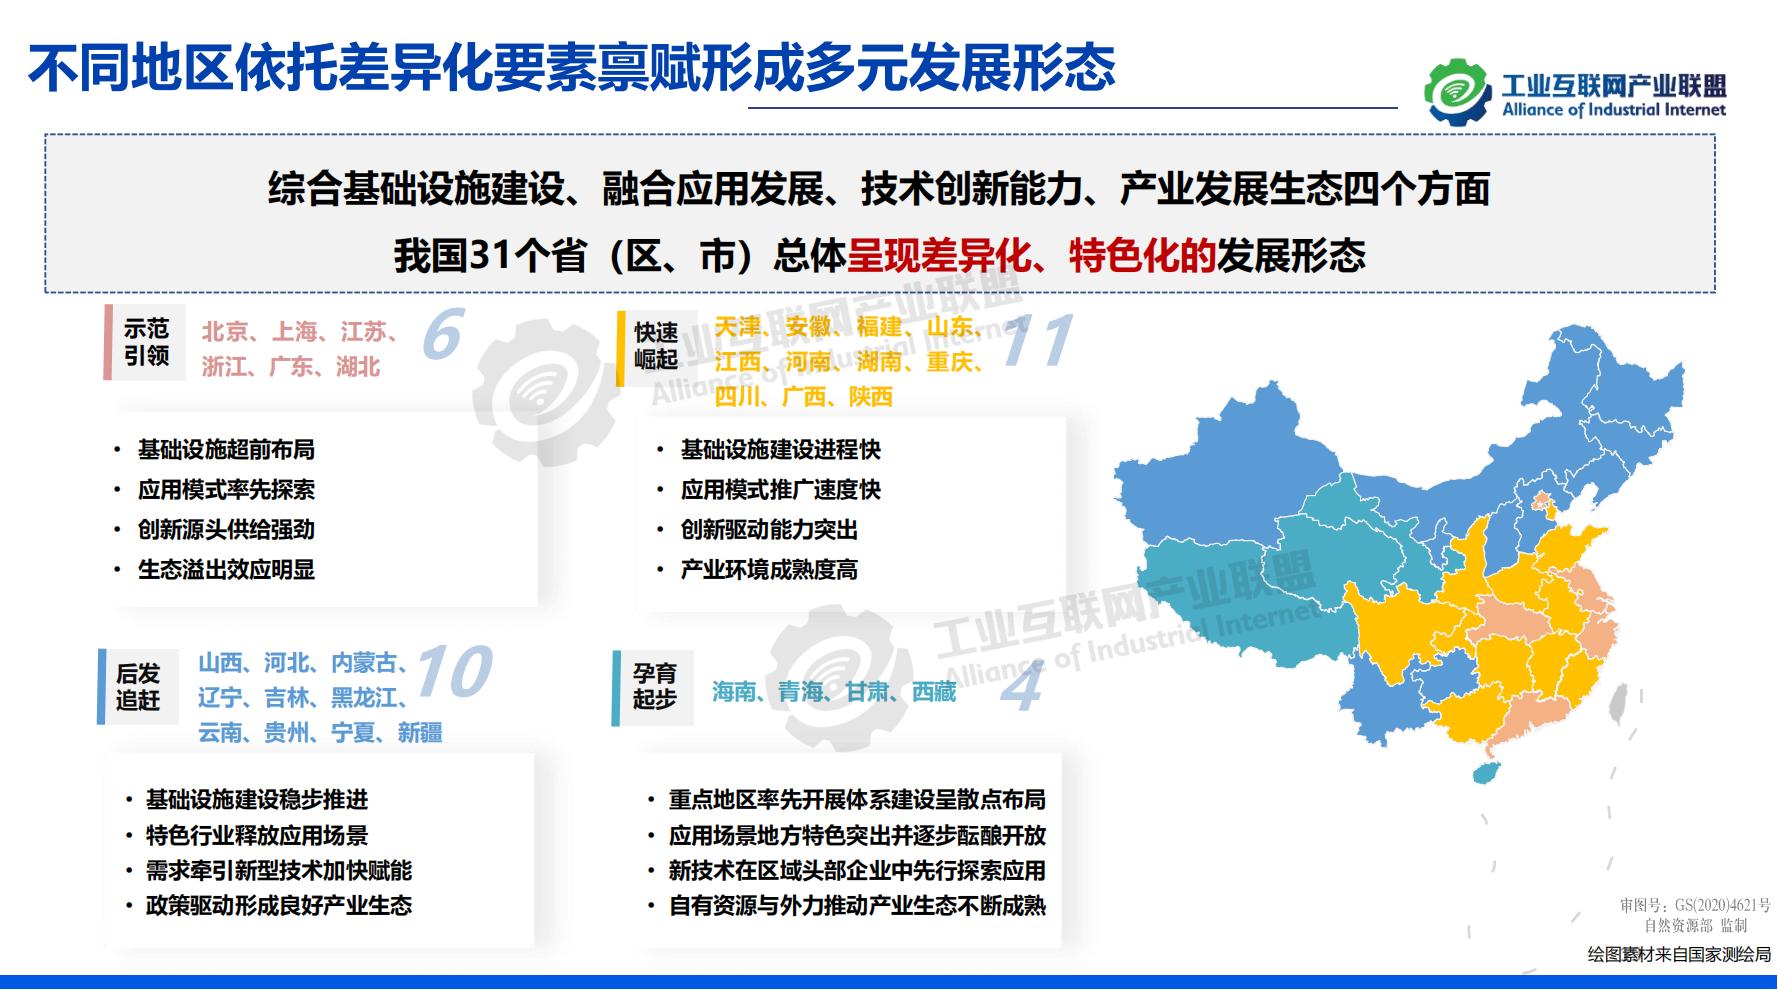 1-中国工业互联网发展成效评估报告-水印_18.jpg